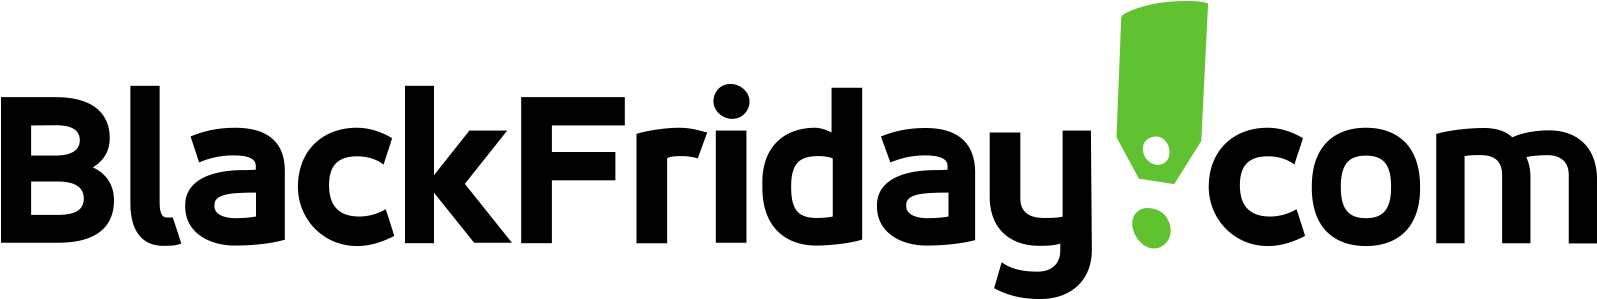 Black Friday Website Logo PNG